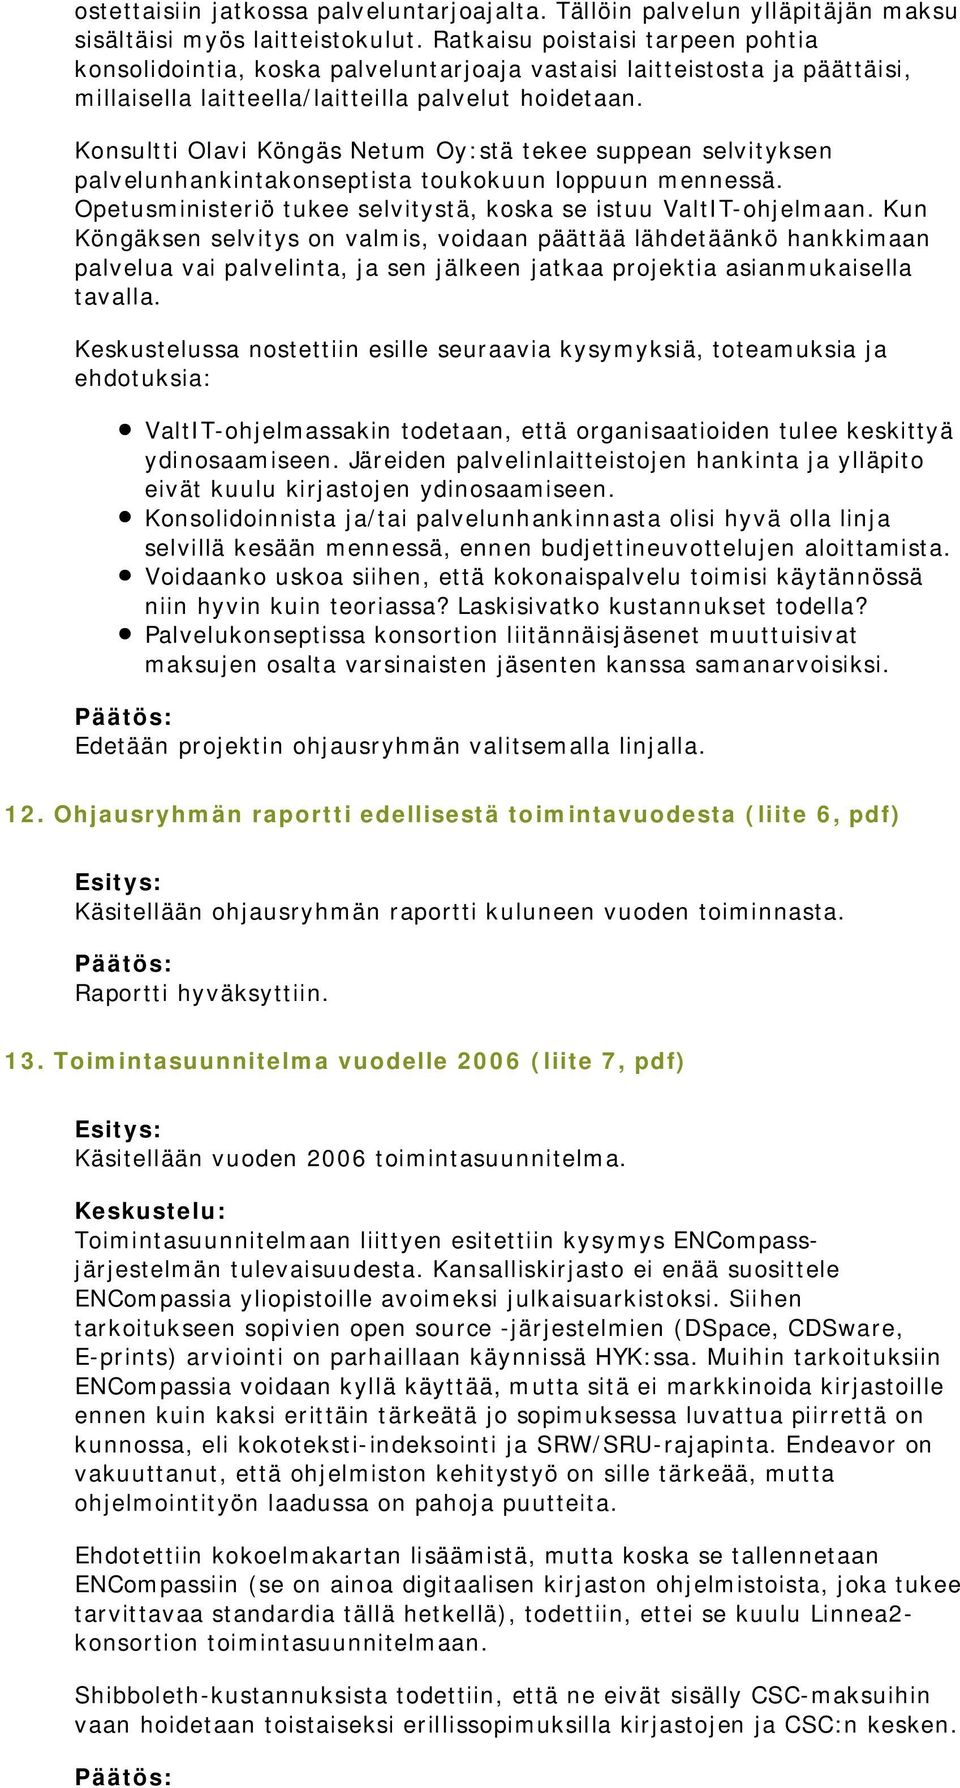 Konsultti Olavi Köngäs Netum Oy:stä tekee suppean selvityksen palvelunhankintakonseptista toukokuun loppuun mennessä. Opetusministeriö tukee selvitystä, koska se istuu ValtIT-ohjelmaan.